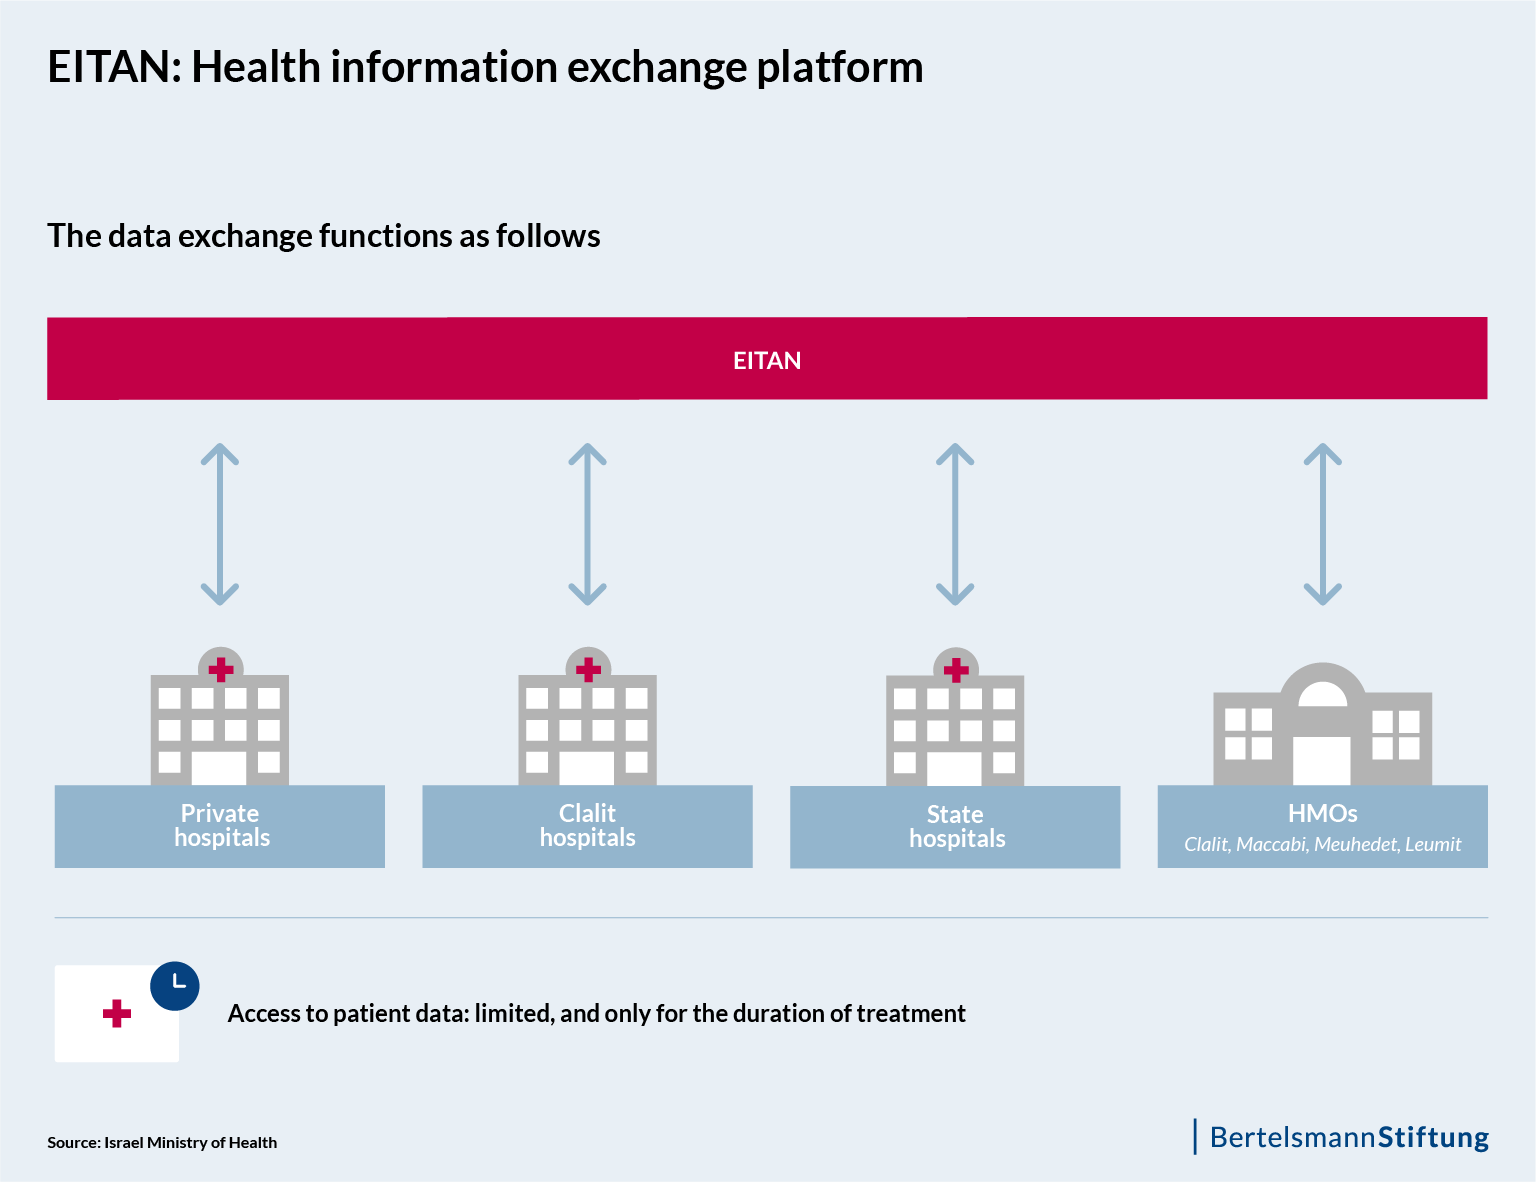 Fig 2: EITAN - Health information exchange platform